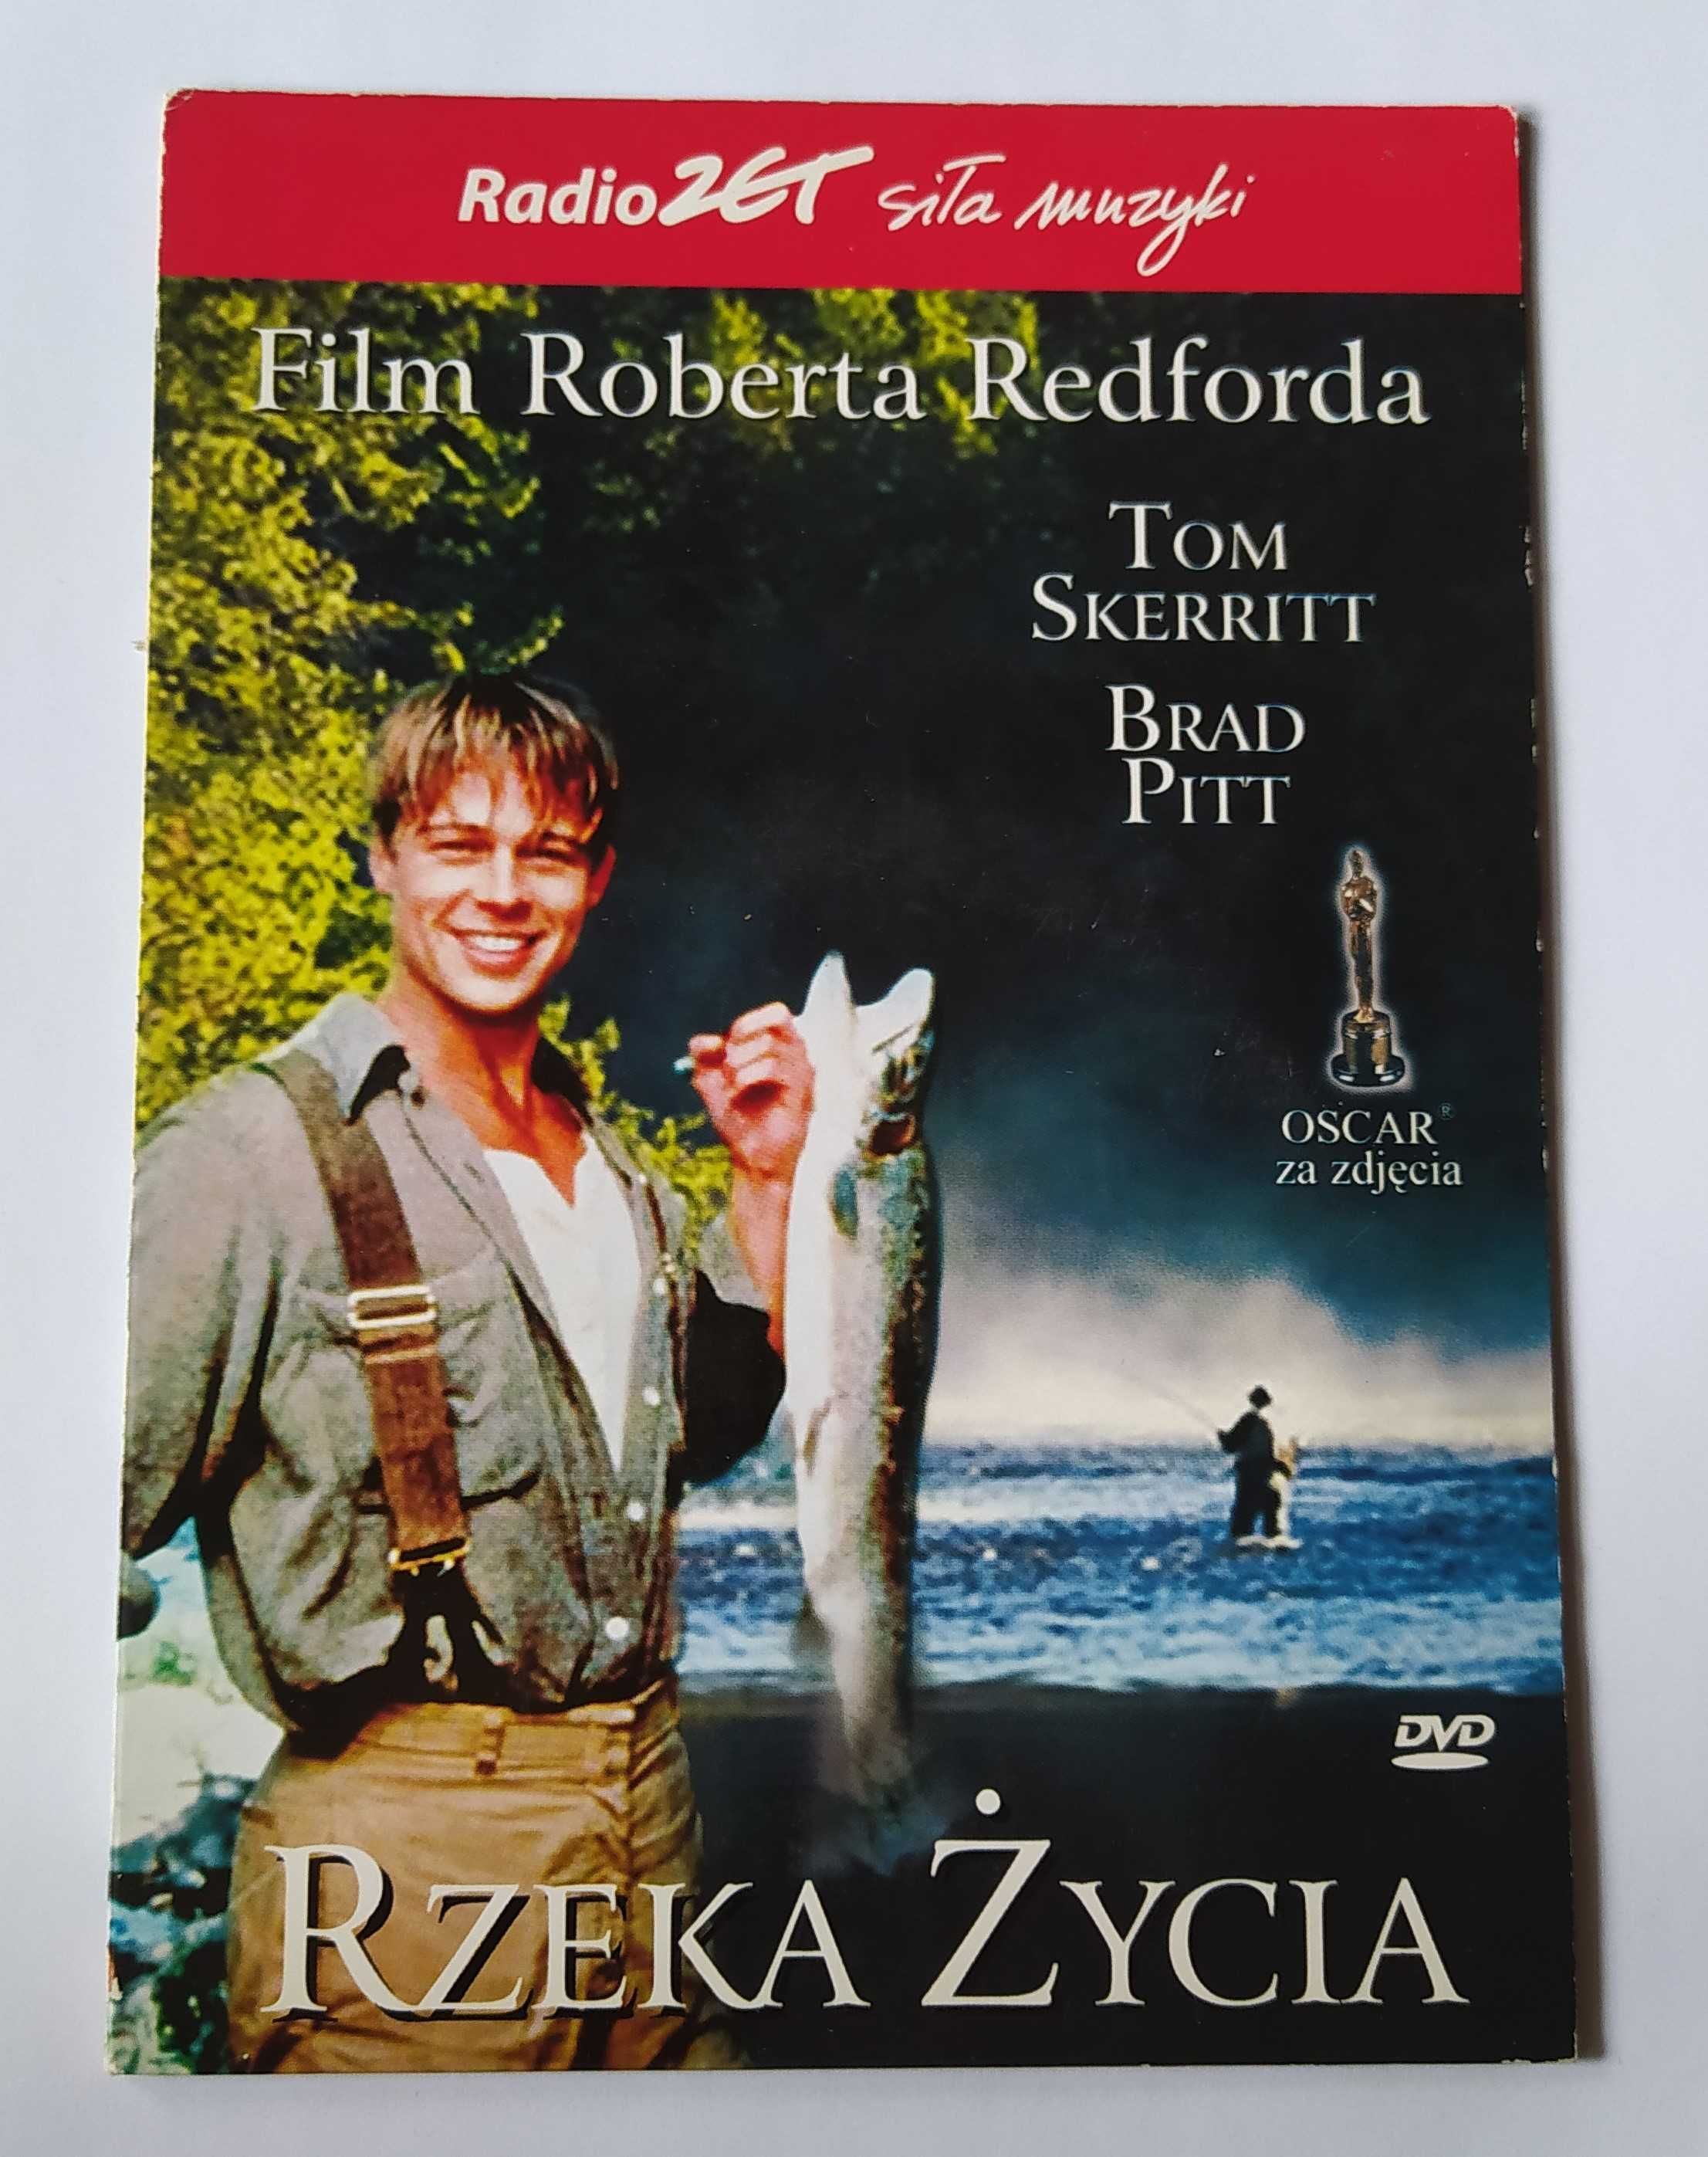 Film Roberta Redforda - Rzeka Życia DVD